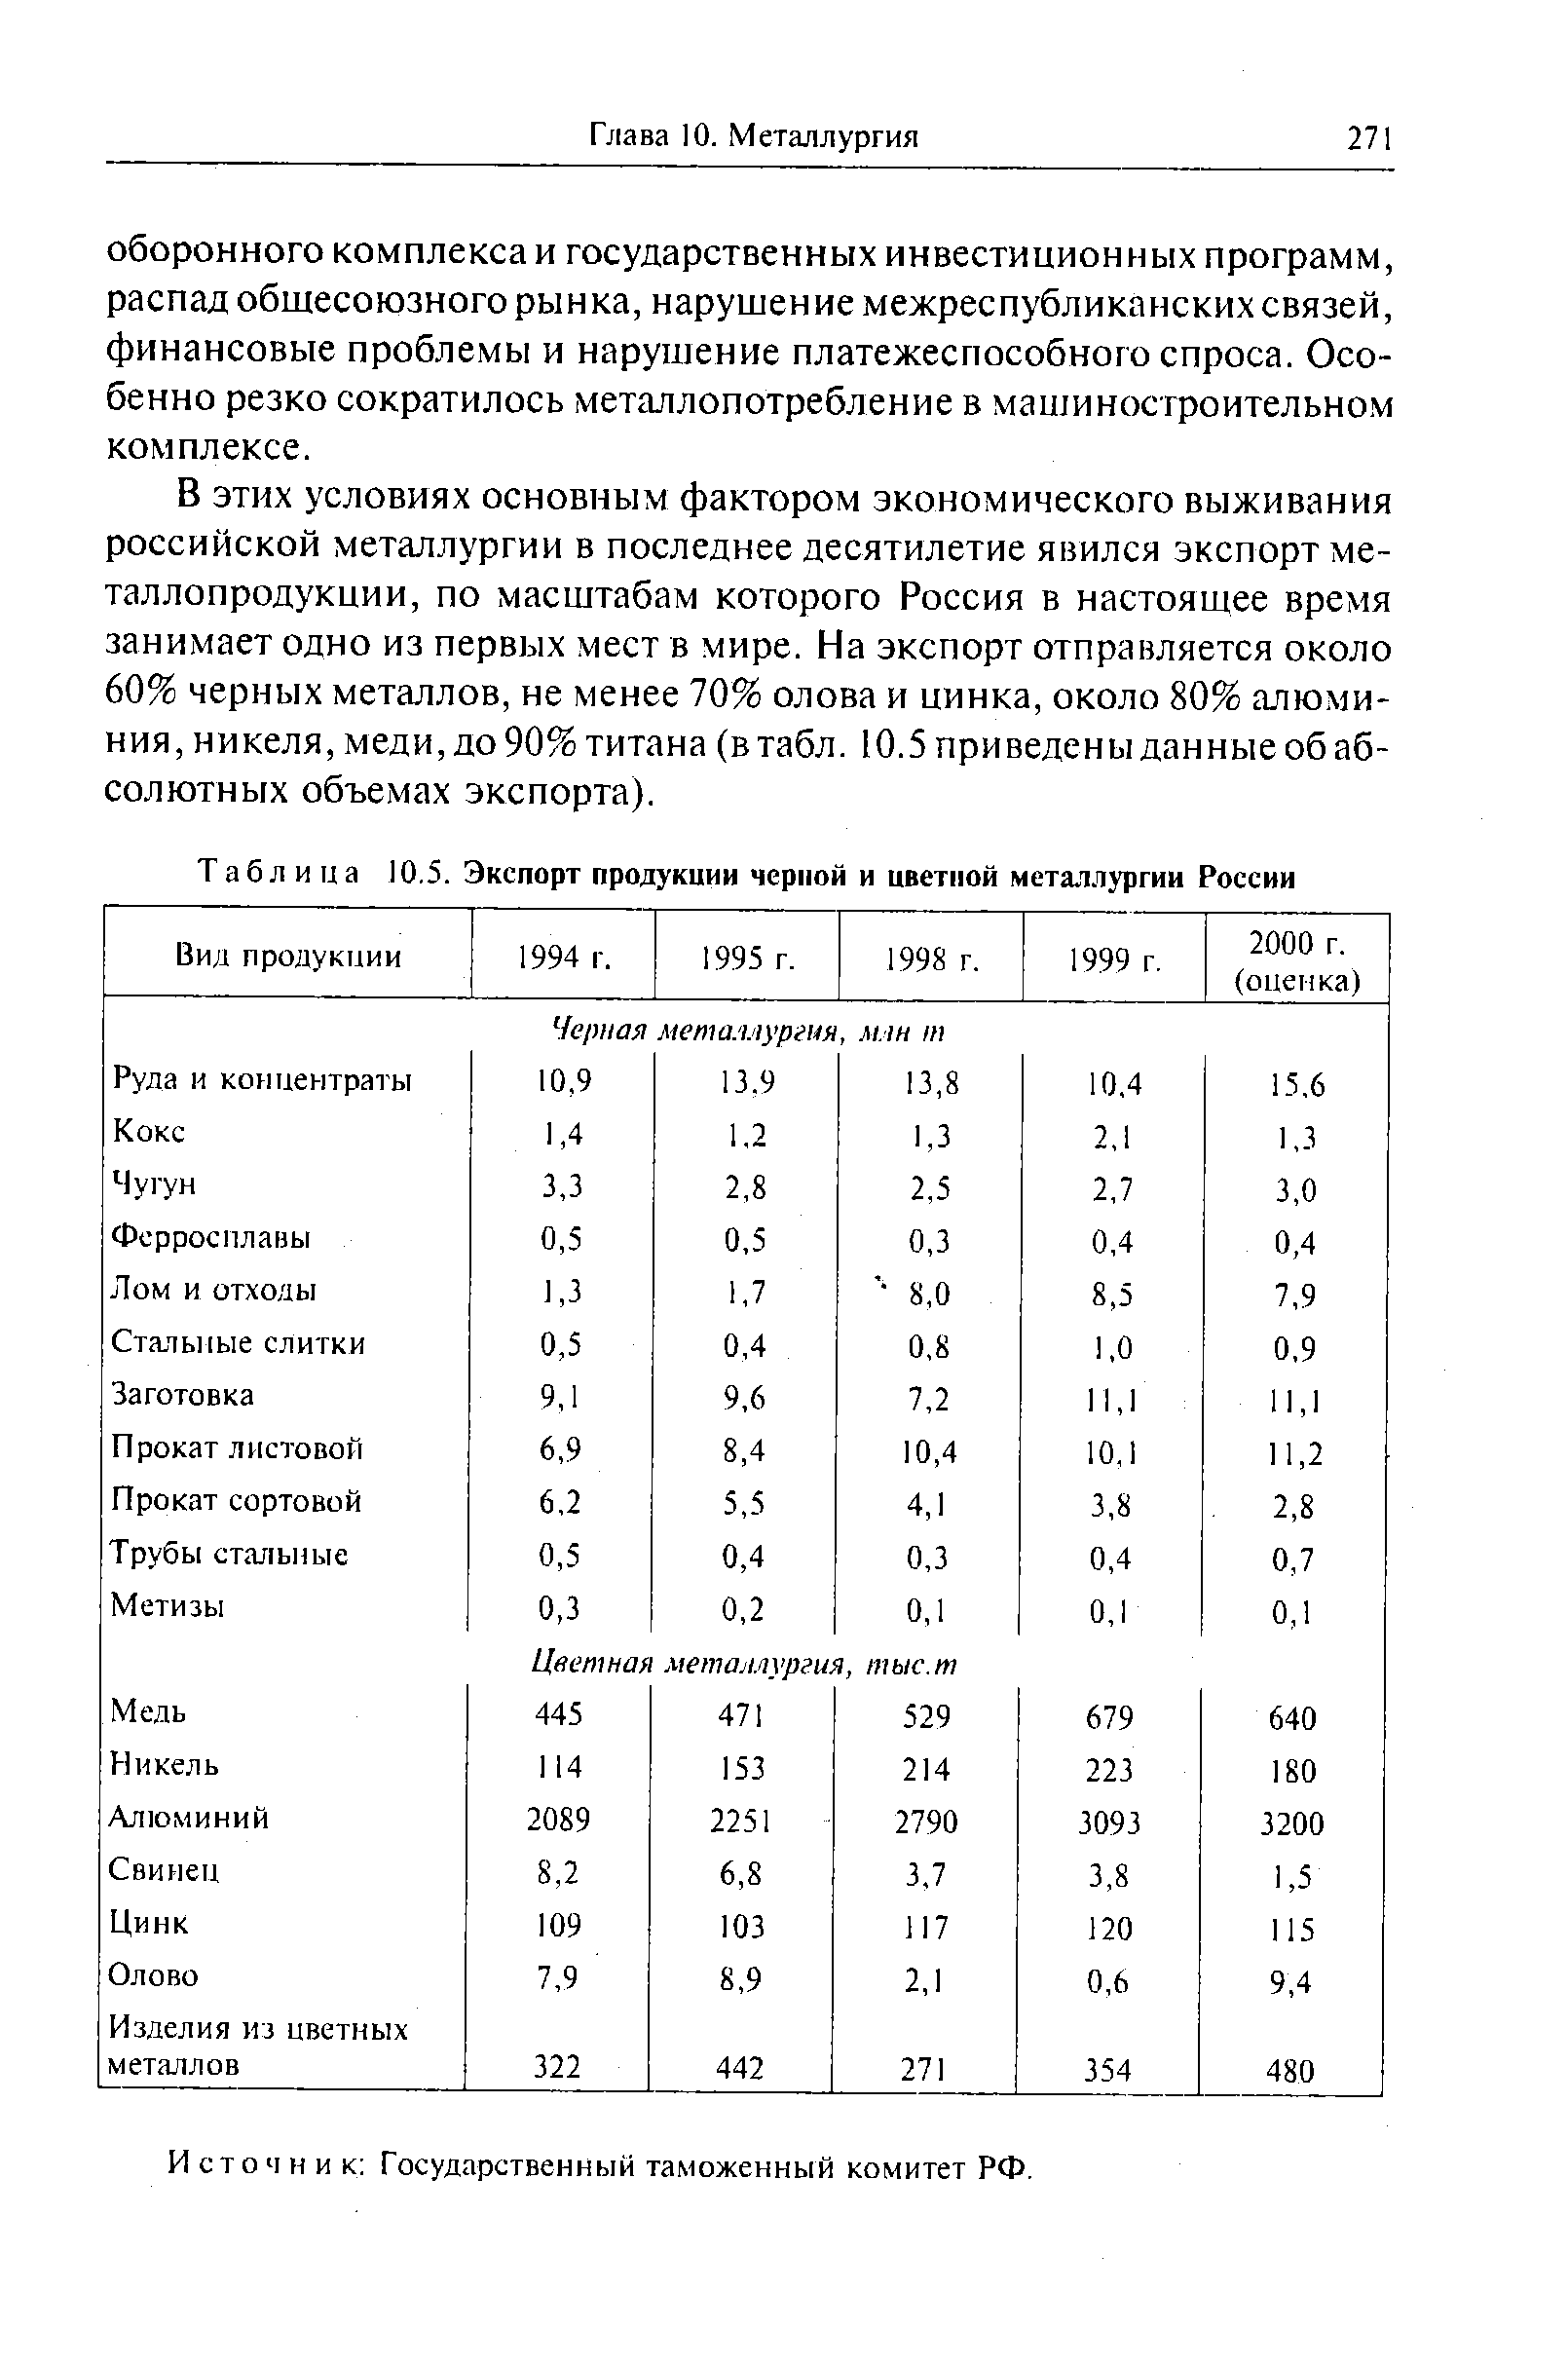 Таблица 10.5. Экспорт продукции черной и <a href="/info/155268">цветной металлургии</a> России
